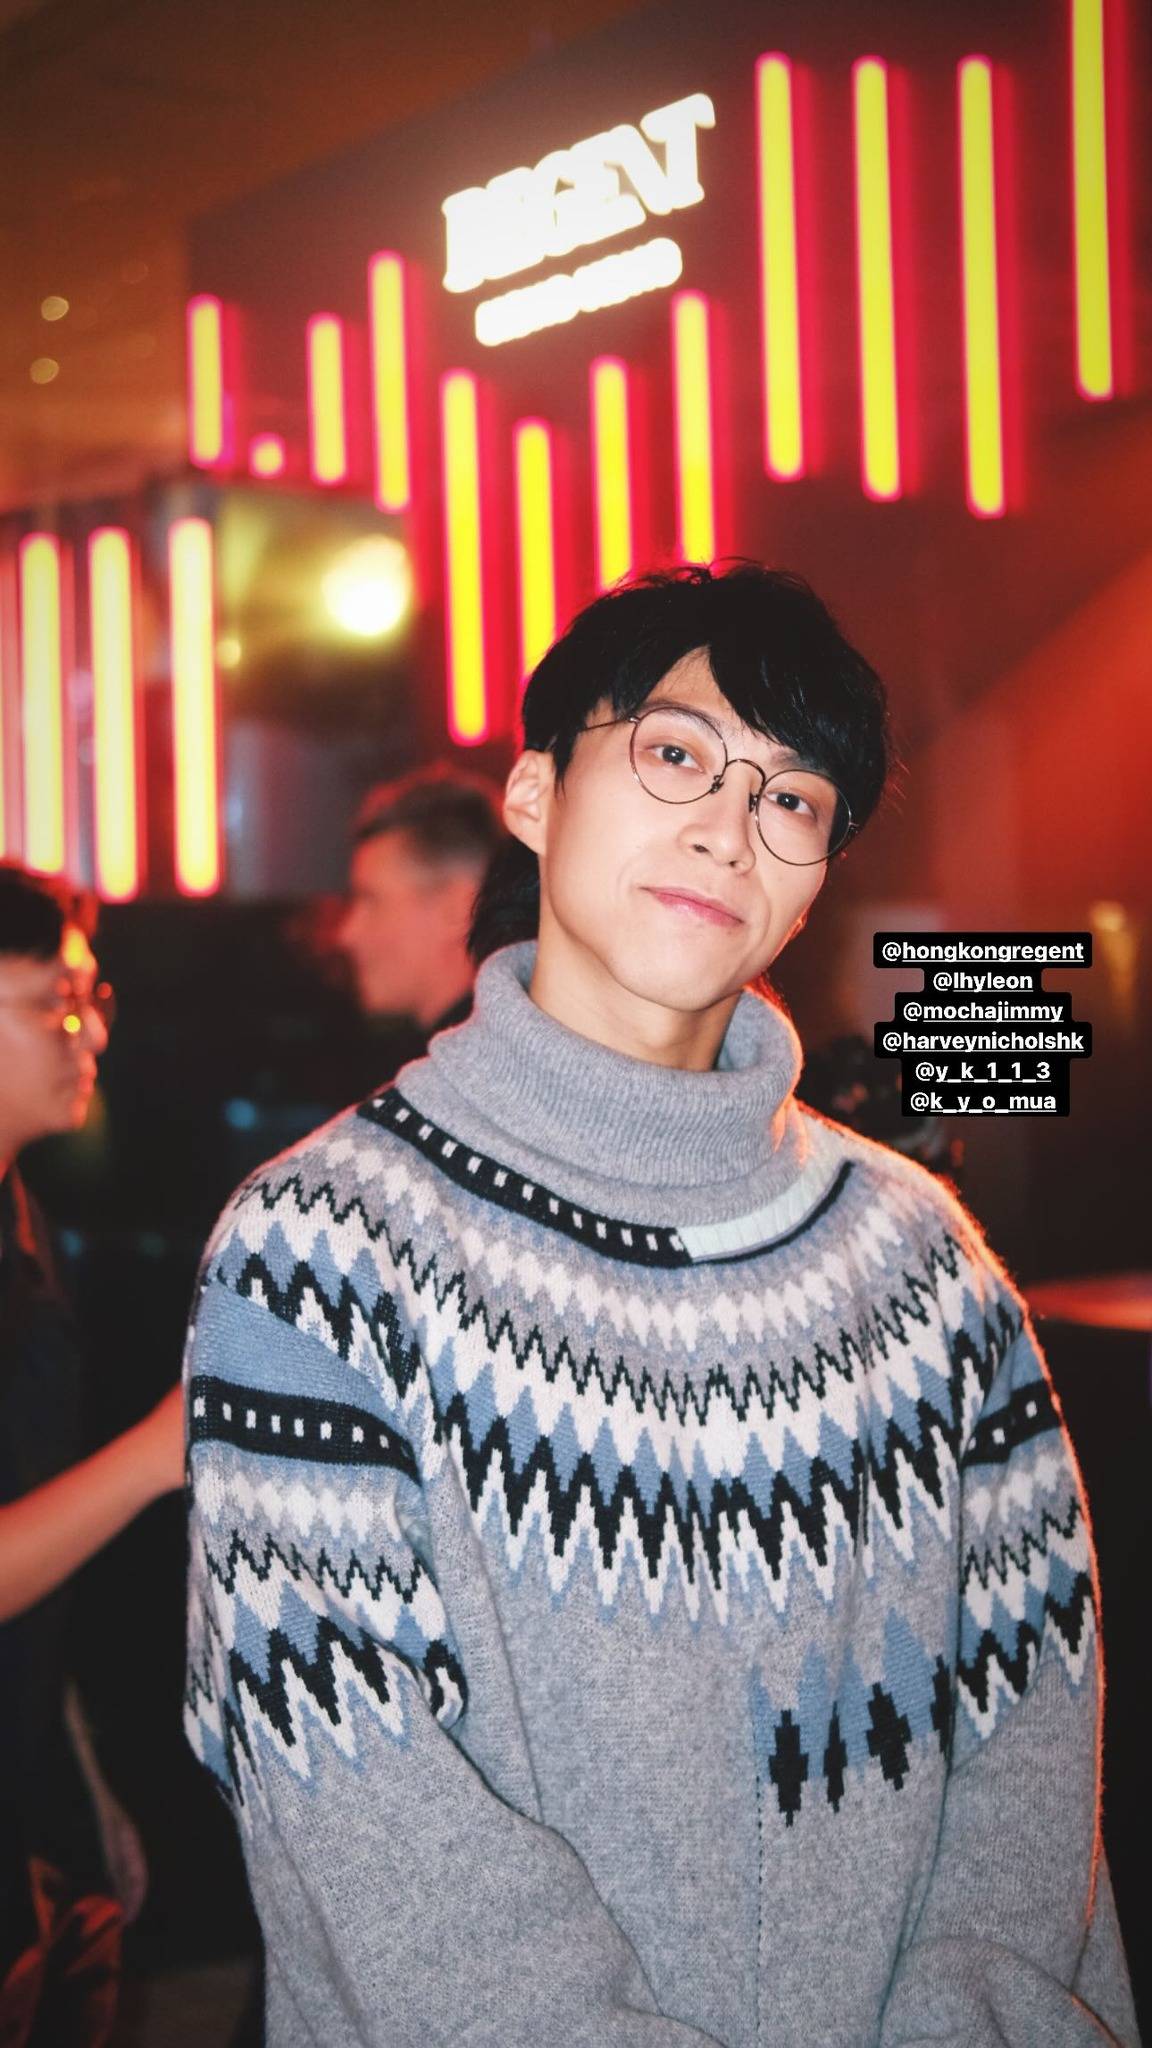 吴业坤 穿冷衫的他被网友估计是到场充当「保镖」全力保护太太